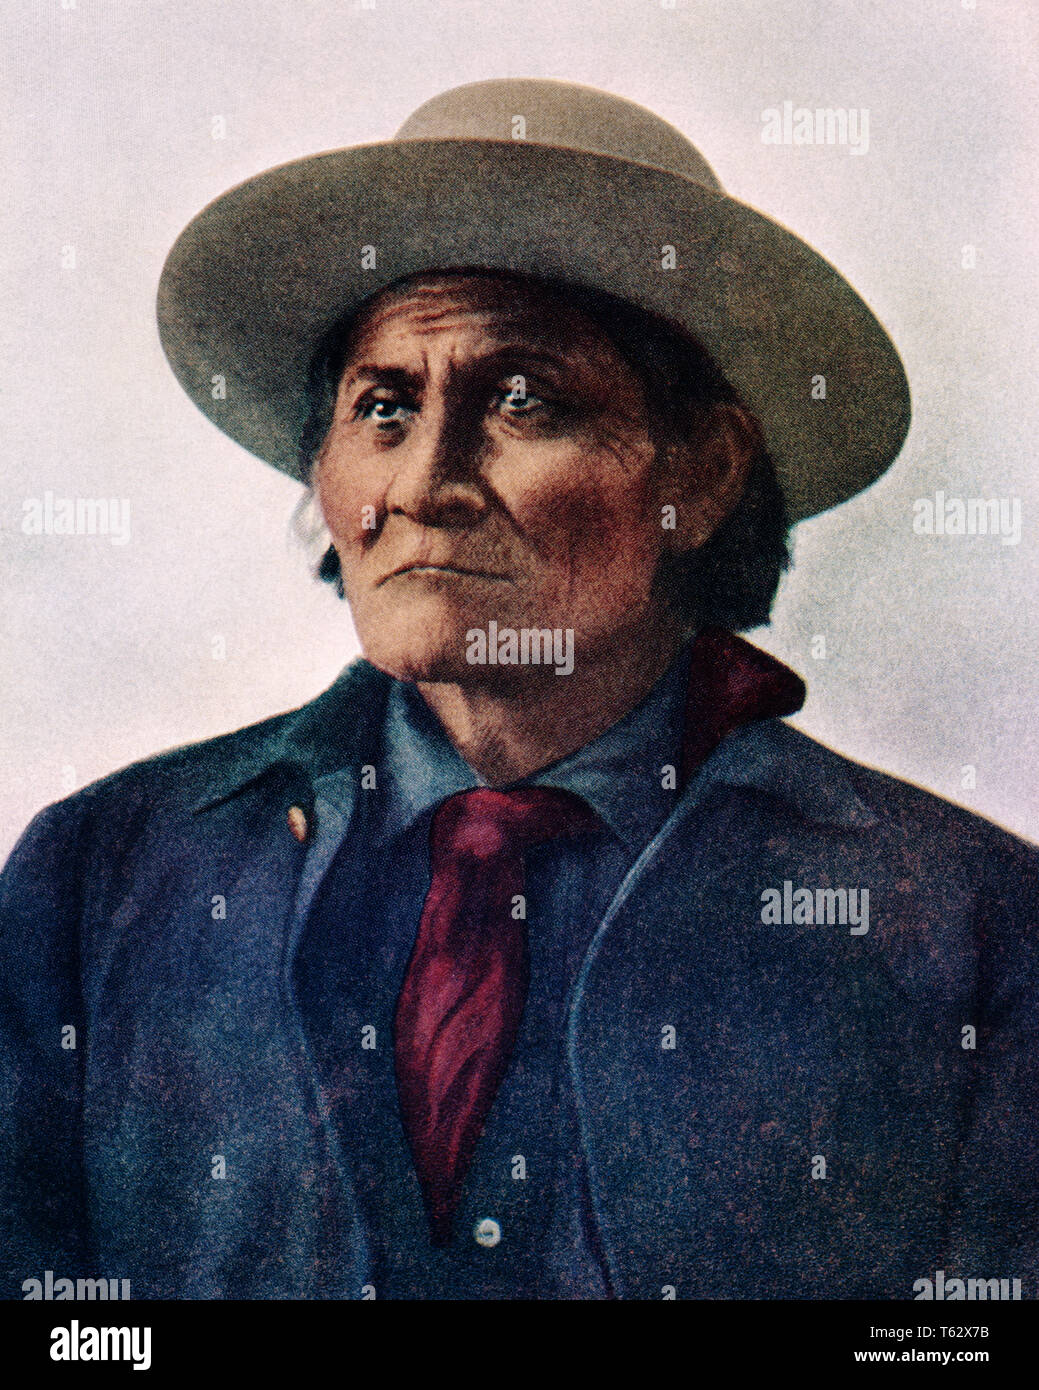 1800s 1900s Portrait von Native American Indian LEADER der CHIRICAHUA MESCALERO APACHE GERONIMO - ki 4305 CPC 001 HARS KRIEGER MUT AUFREGUNG WISSEN FÜHRUNG STARK VON AUTORITÄT ARIZONA CELEBRITY ESCAPE STILVOLLE NATIVE AMERICAN GERONIMO INDIANER APACHE AZ INDIGENEN ALTMODISCH Stockfoto